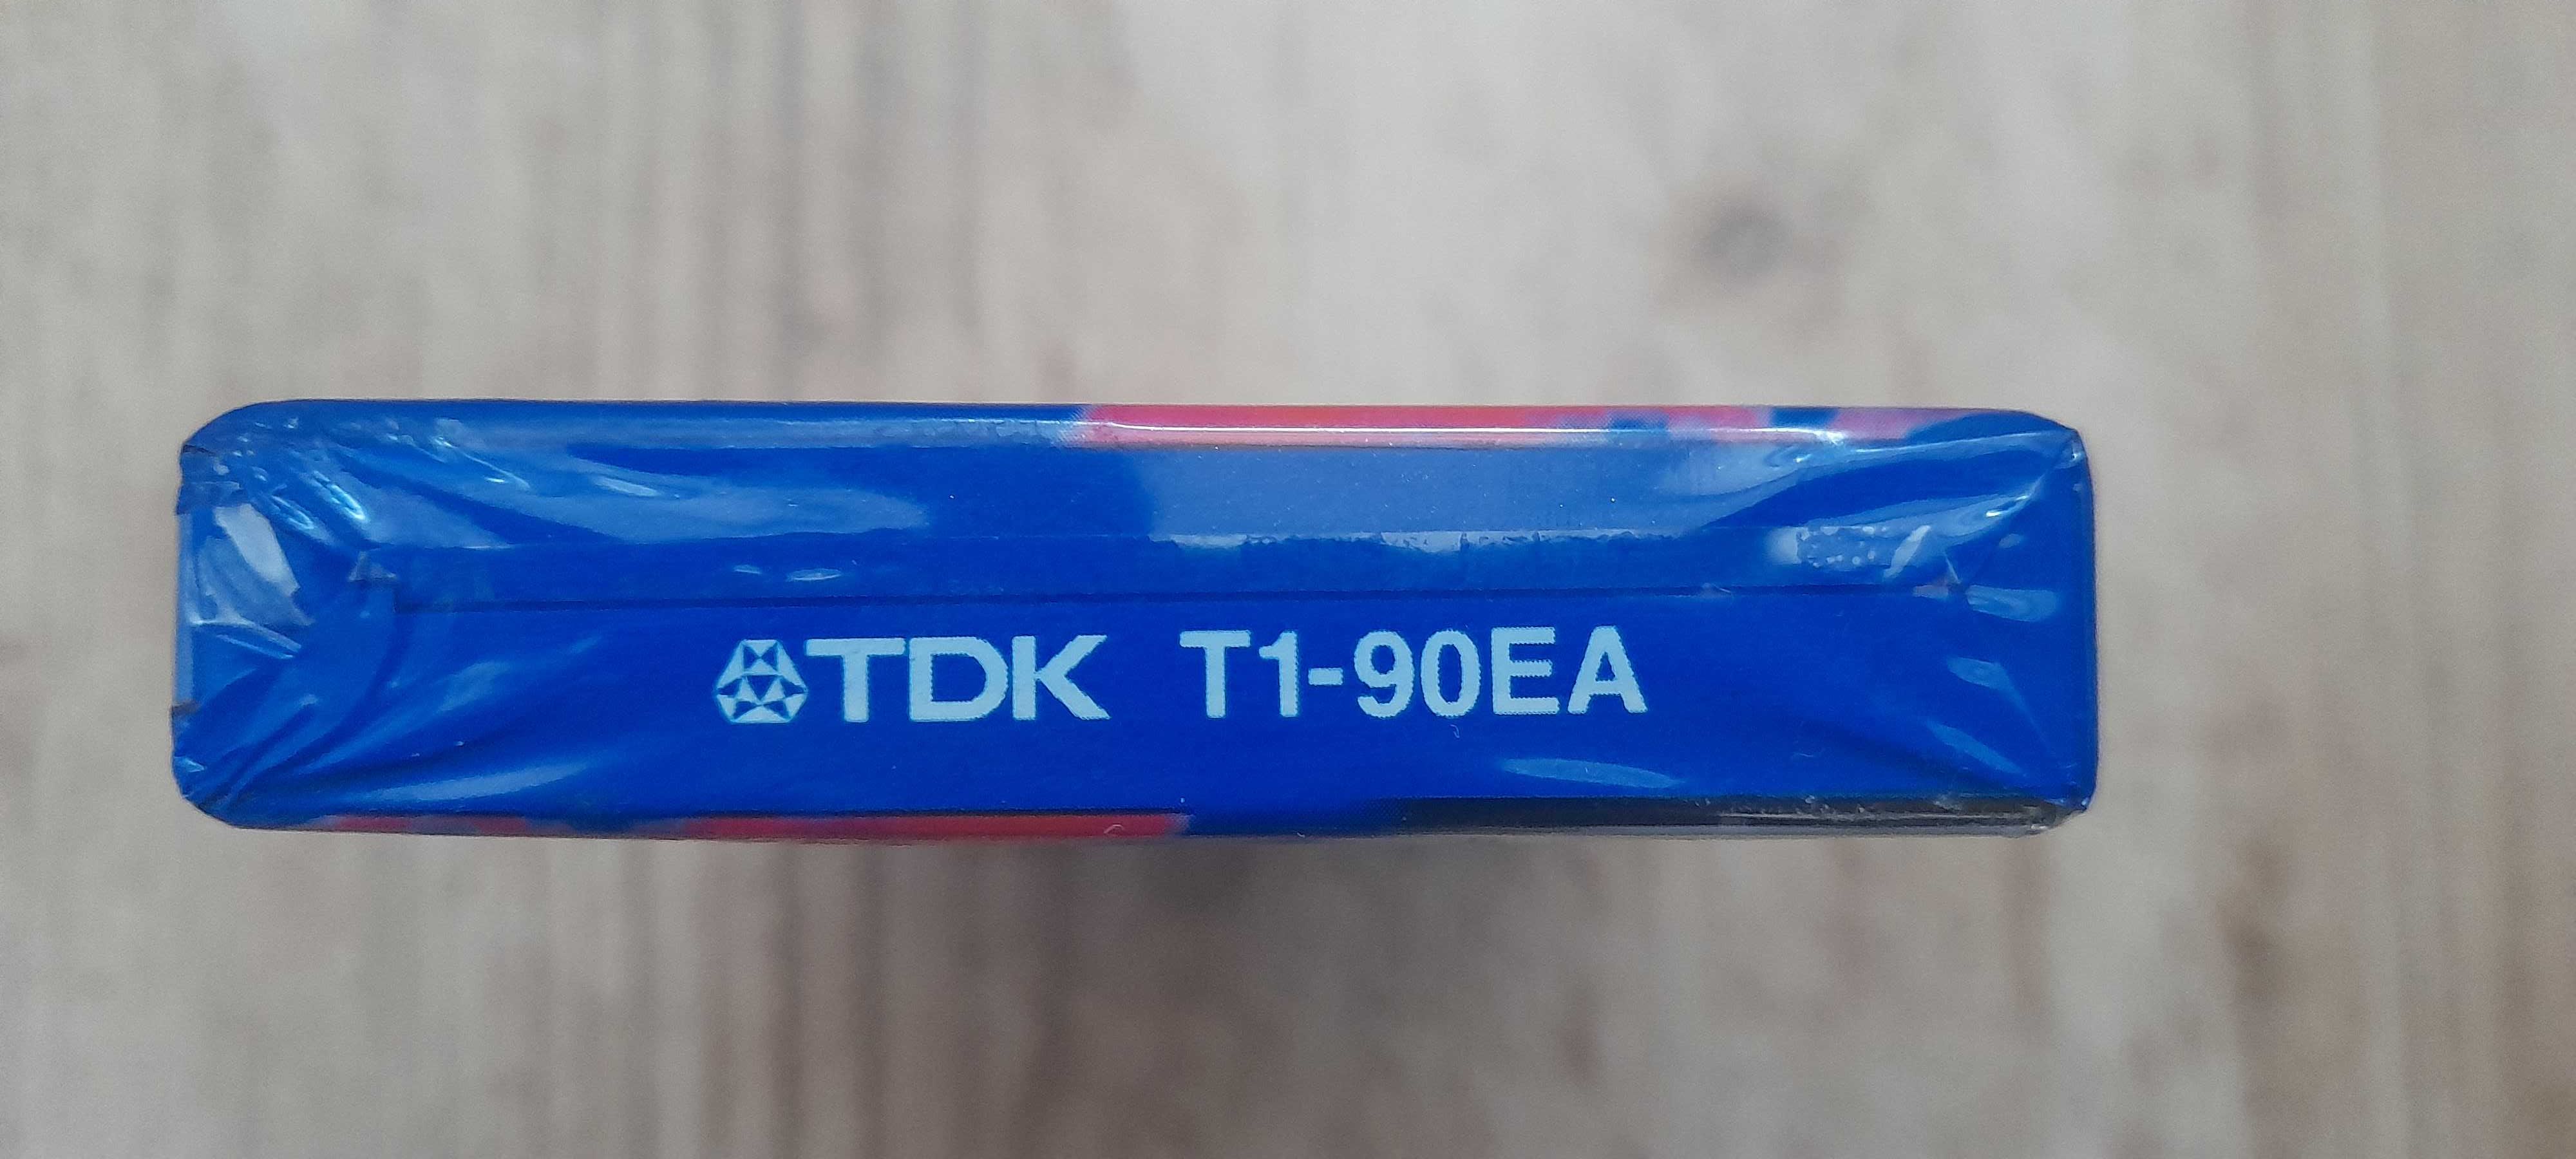 Kaseta TDK T1 90 - fabrycznie nowa, zafoliowana